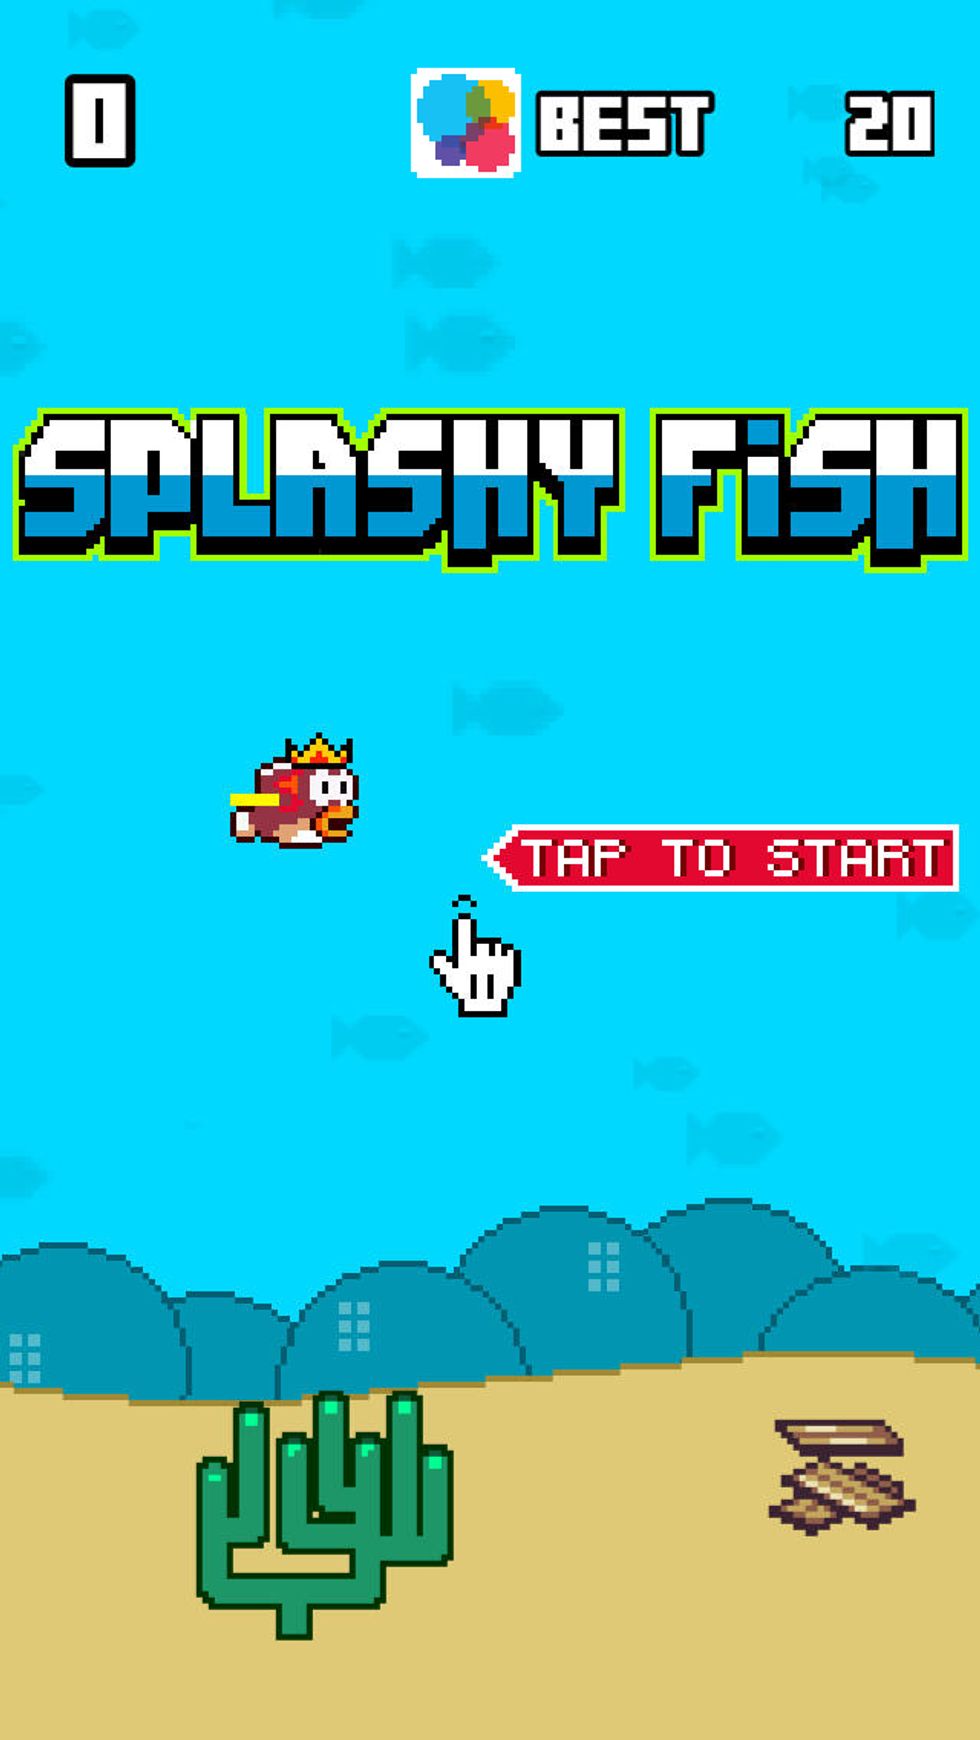 Flappy Bird, ecco i 5 cloni più gettonati del momento